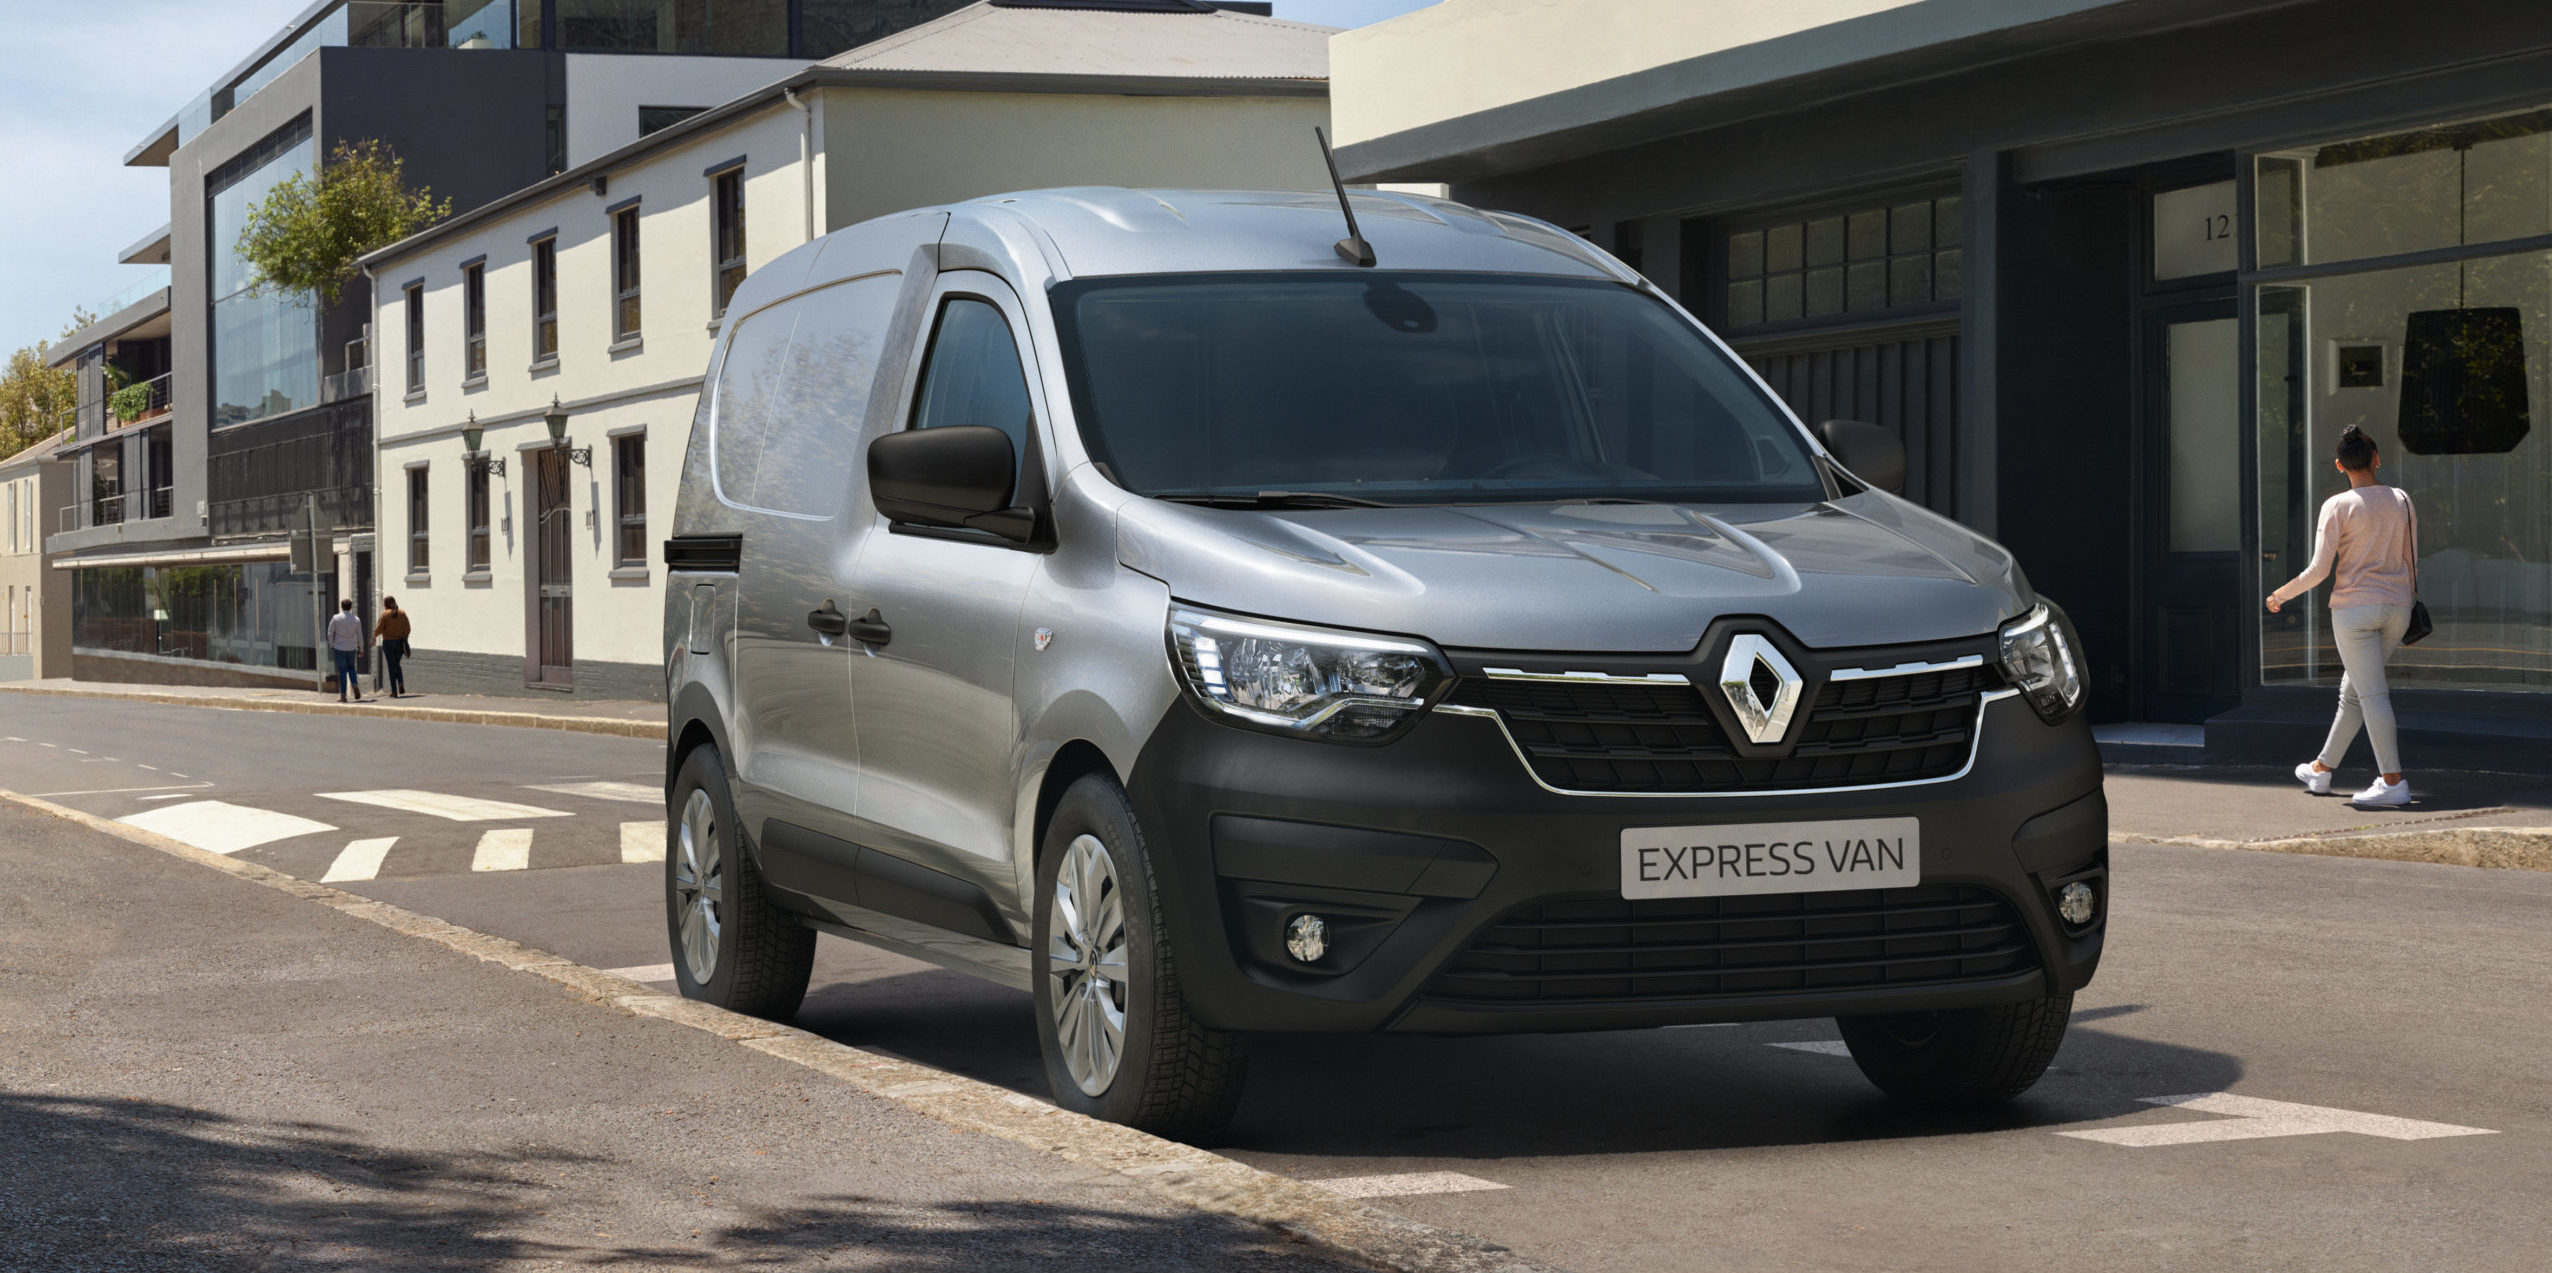 Renault Express Van Renting Finders